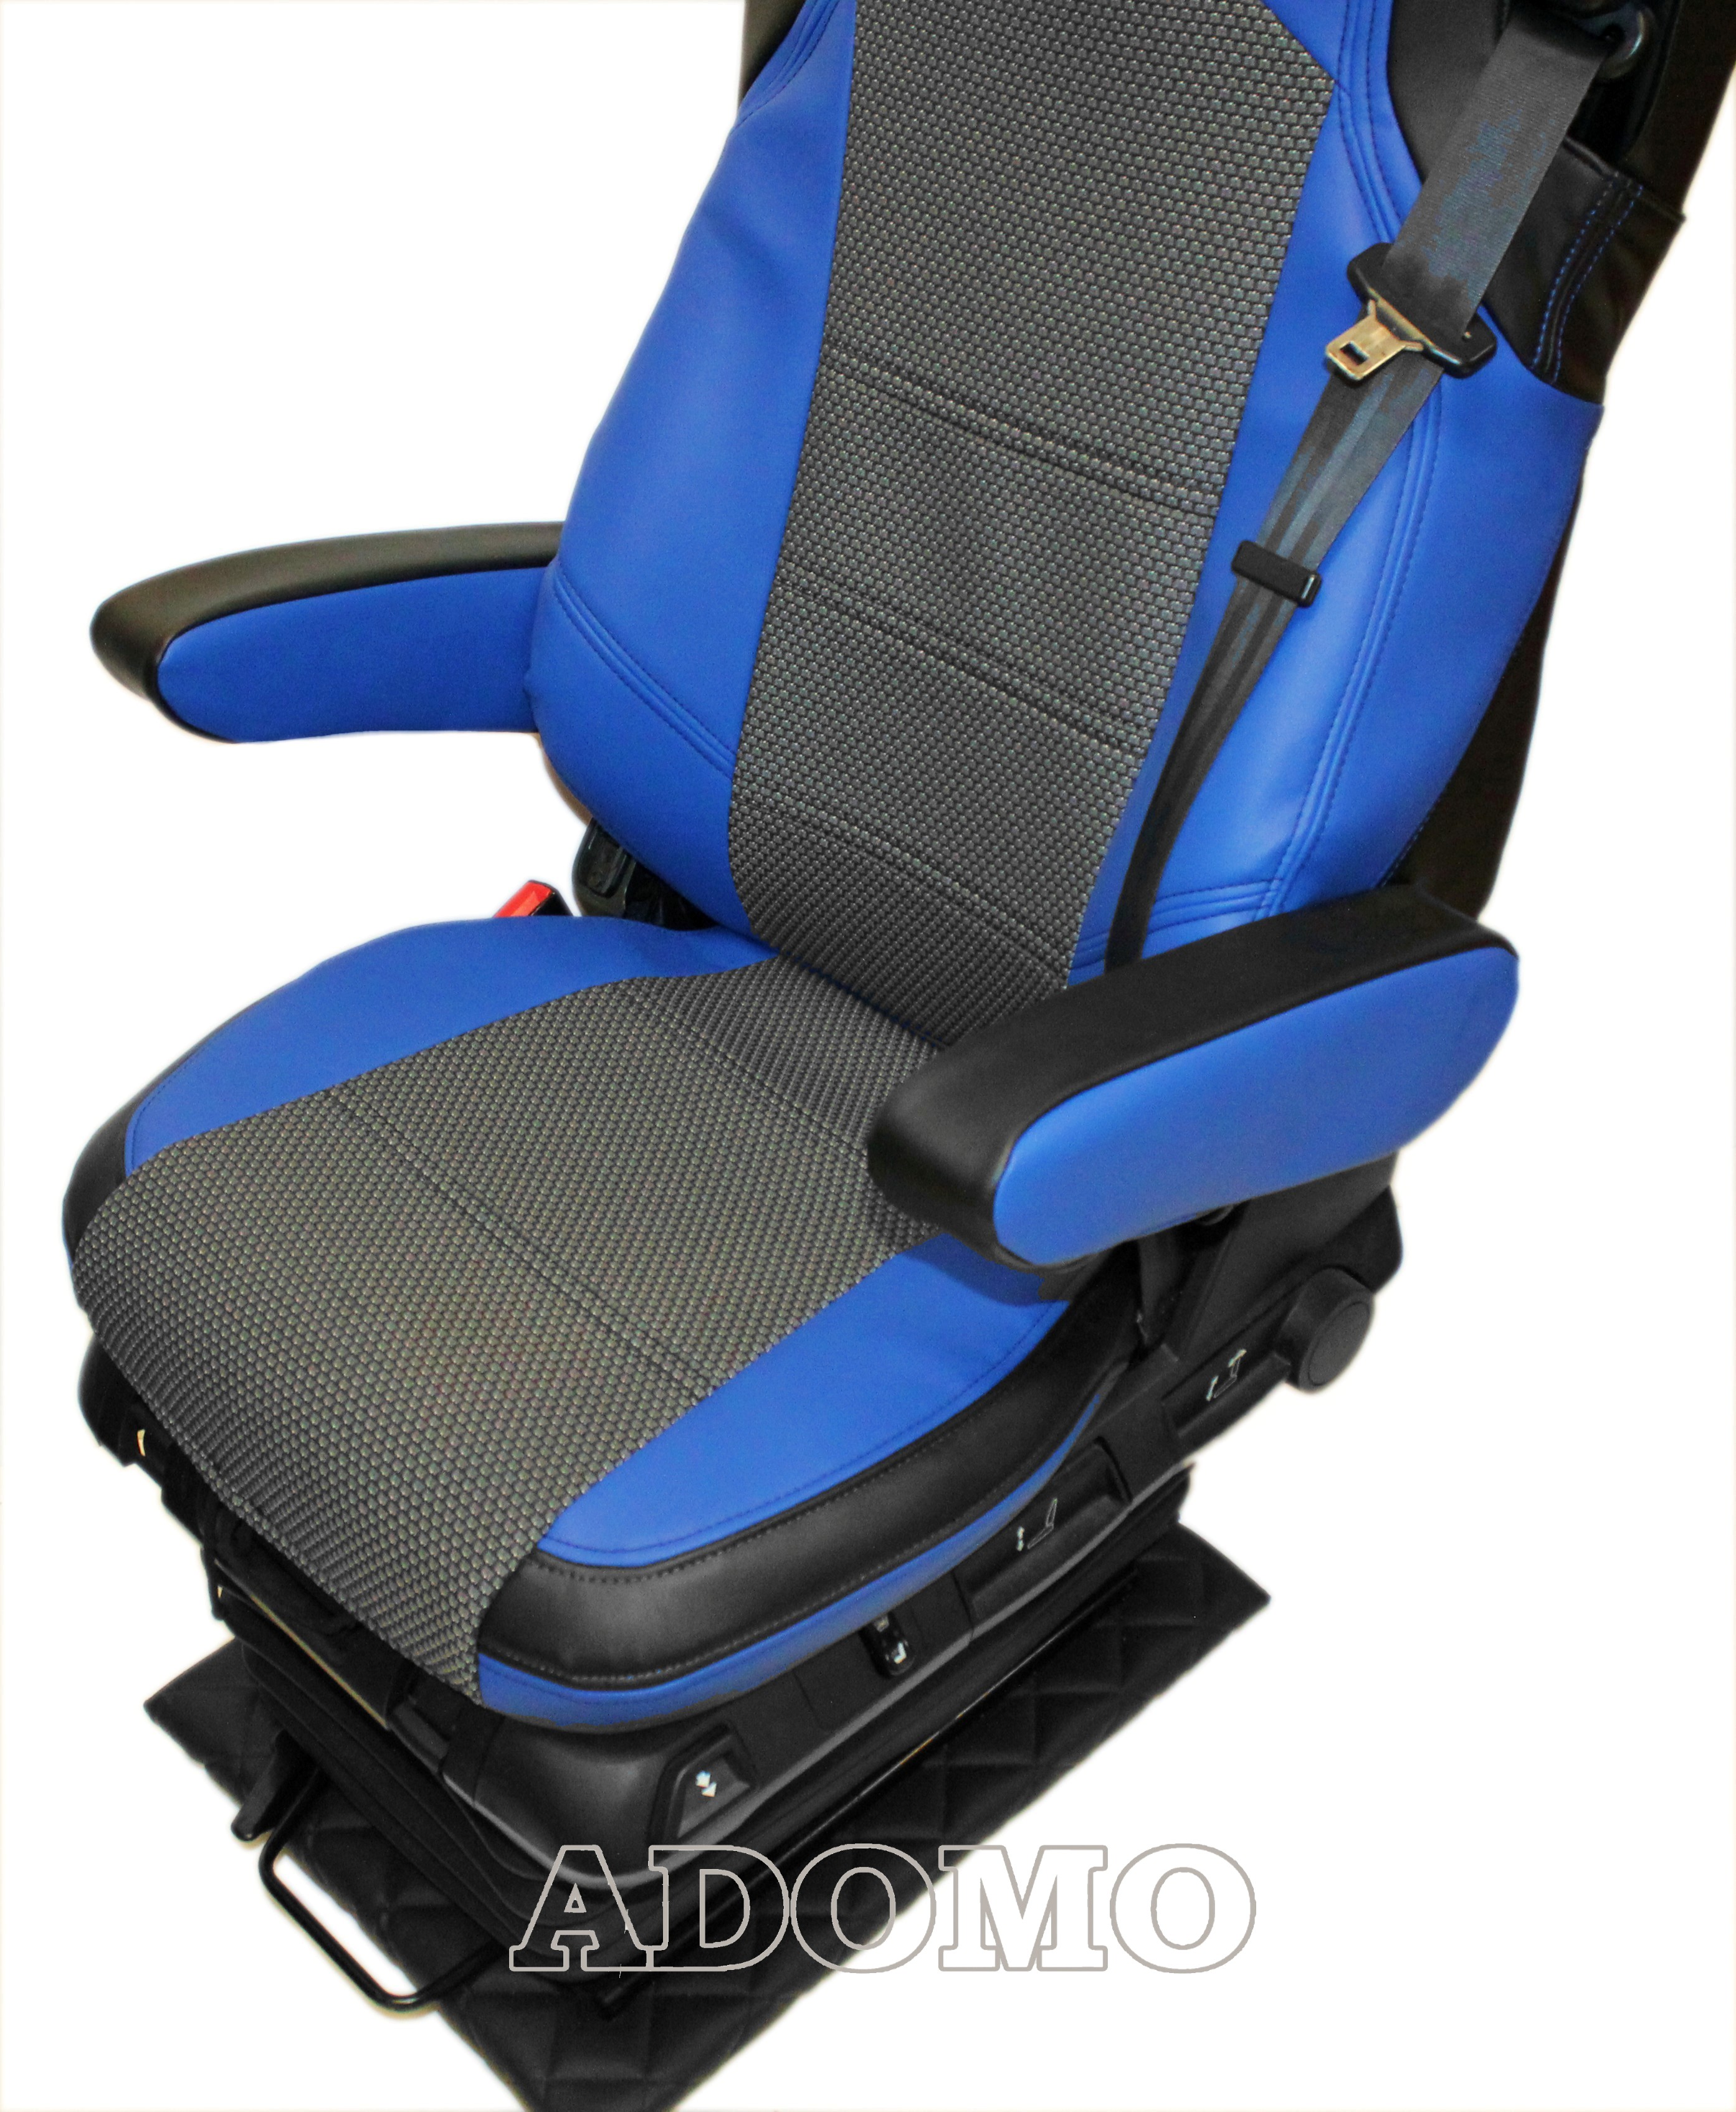 Adomo LKW-Shop, Wohnmobil Sitzbezüge für Fiat Ducato ab 2015, mit 4  Armlehnen, blau-schwarz